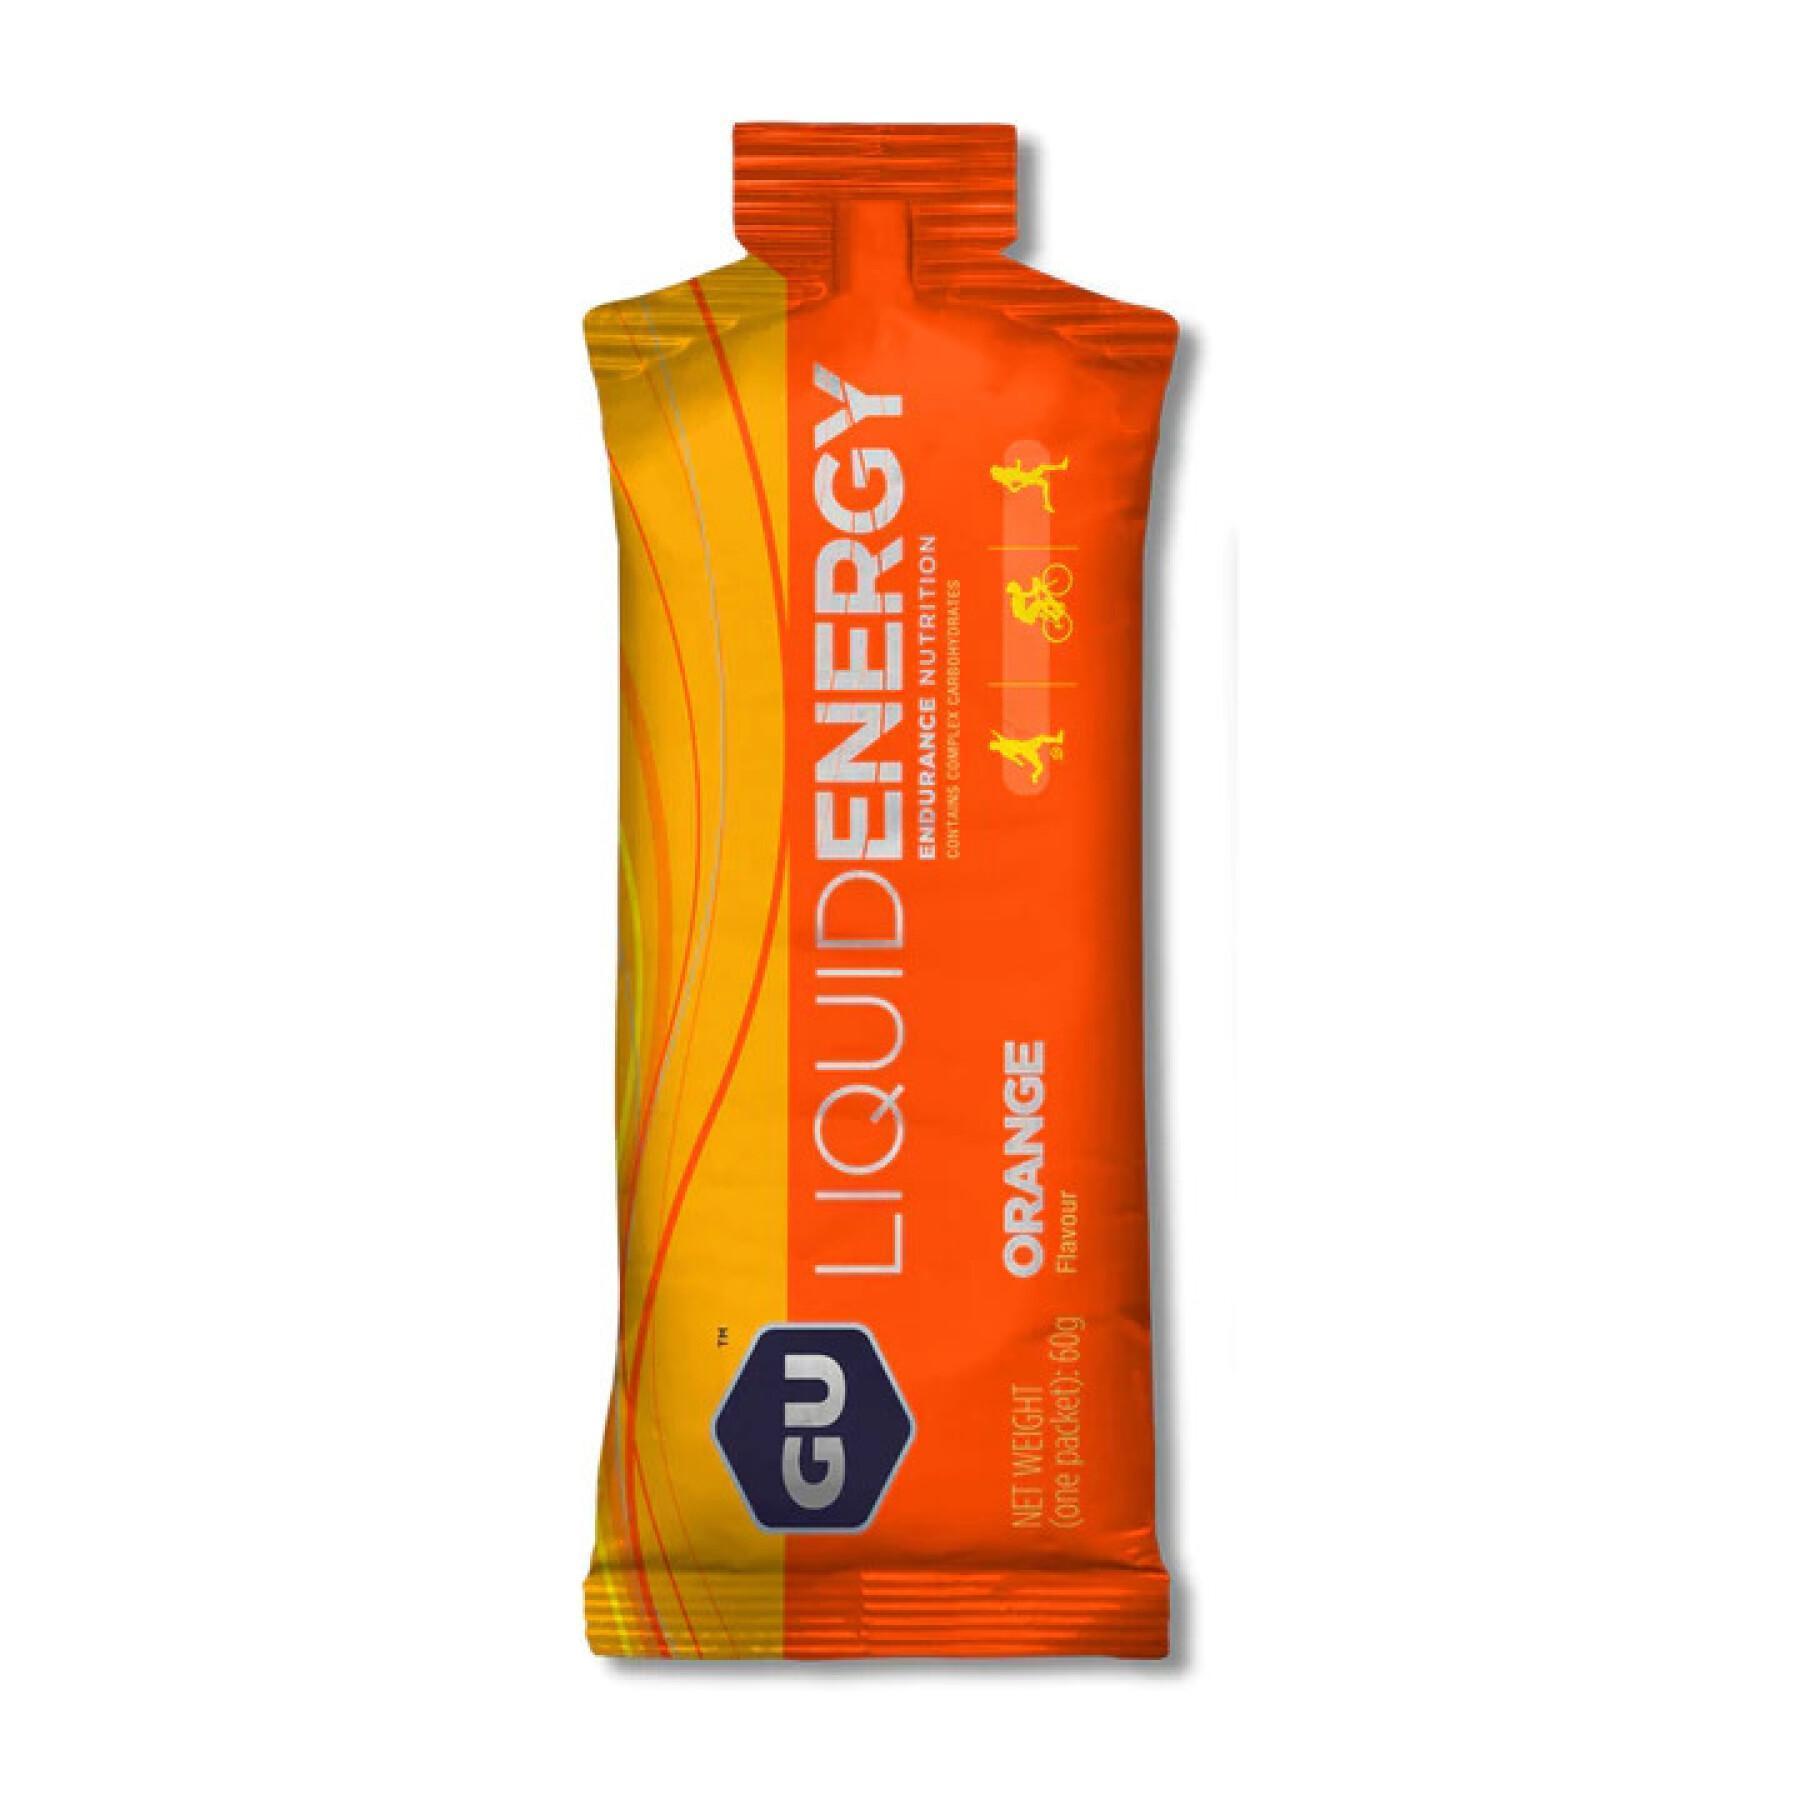 Box of 12 energy gels - orange Gu Energy